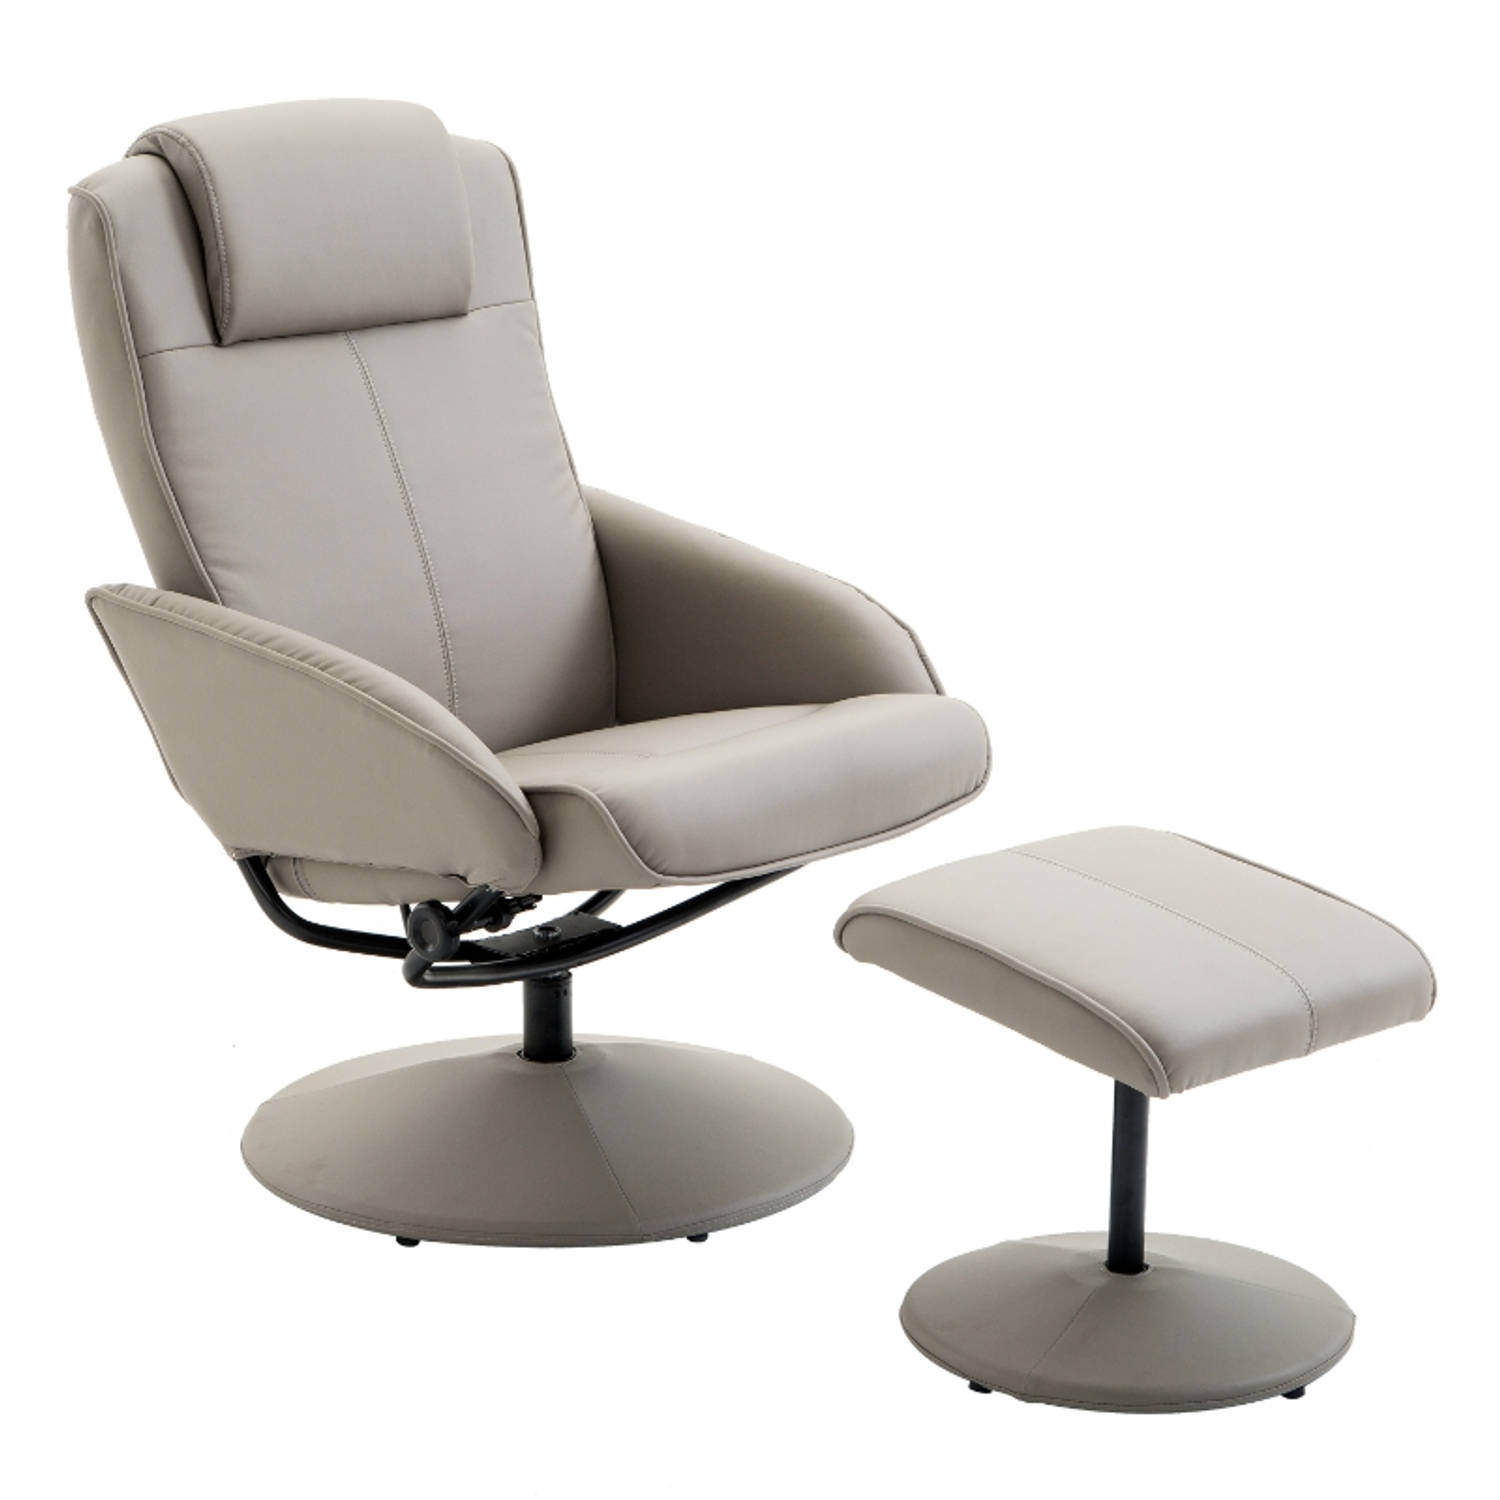 Relaxstoel met voetenbankje Stoelen Relax fauteuil Stoel Draaifauteuil Draaistoel Grijs L78 × B71 × 